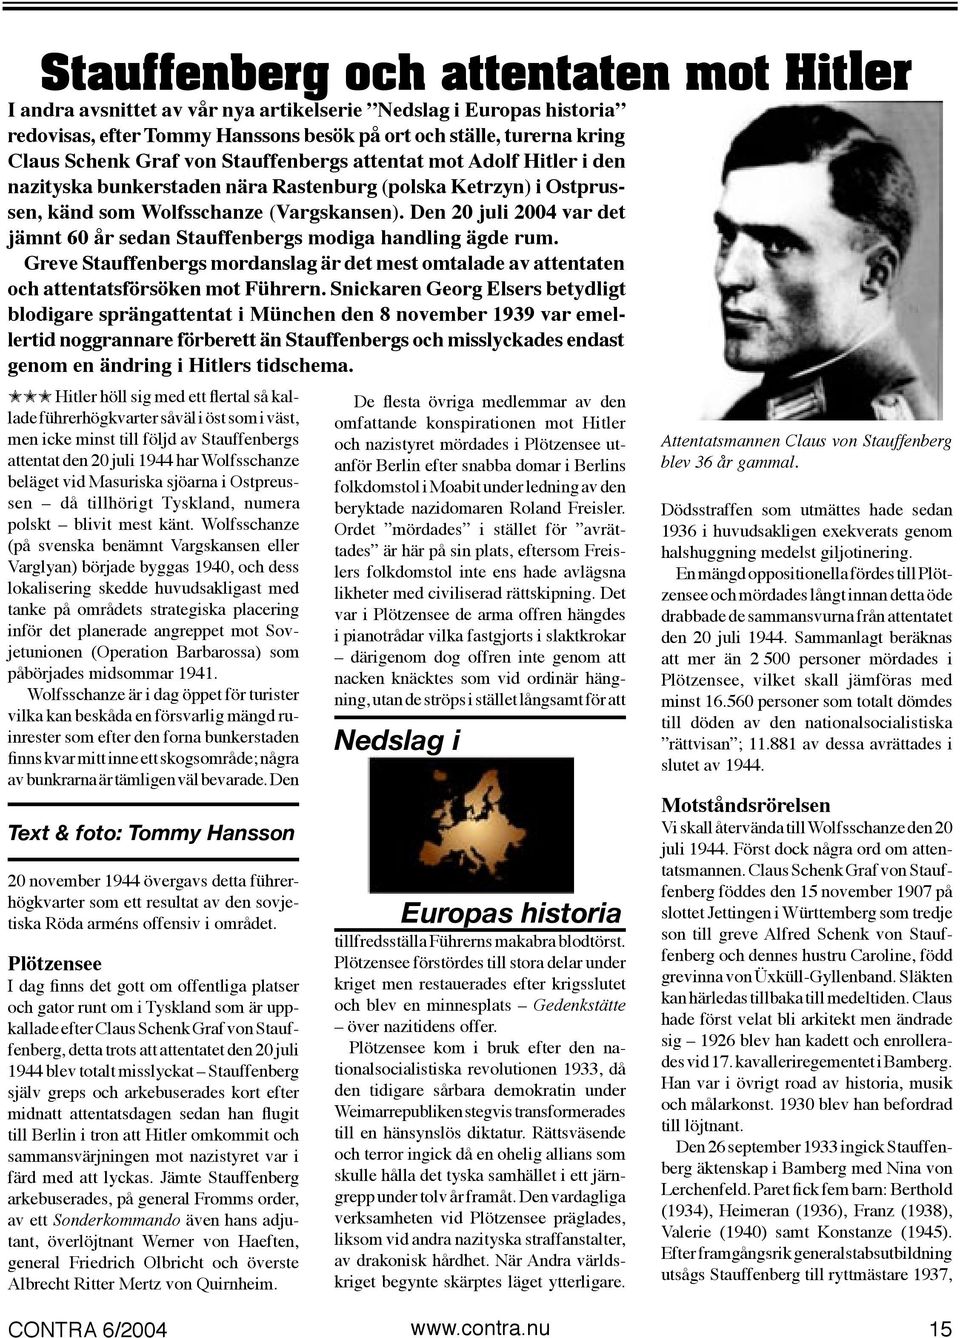 Den 20 juli 2004 var det jämnt 60 år sedan Stauffenbergs modiga handling ägde rum. Greve Stauffenbergs mordanslag är det mest omtalade av attentaten och attentatsförsöken mot Führern.